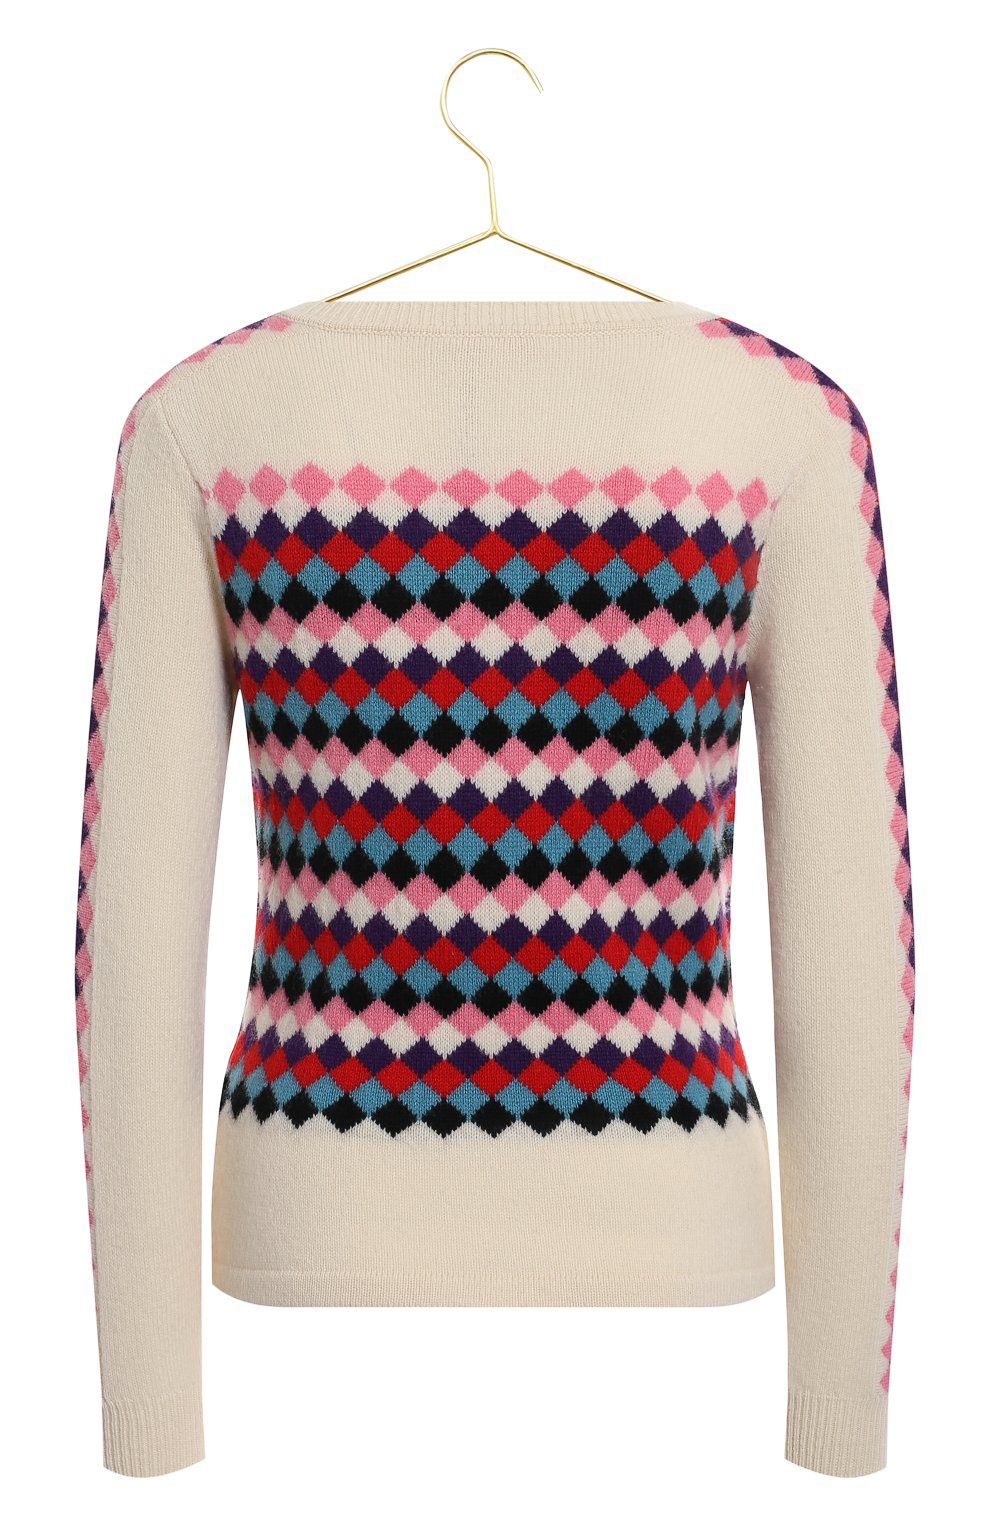 Шерстяной кардиган и пуловер | Olympia Le-Tan | Разноцветный - 3